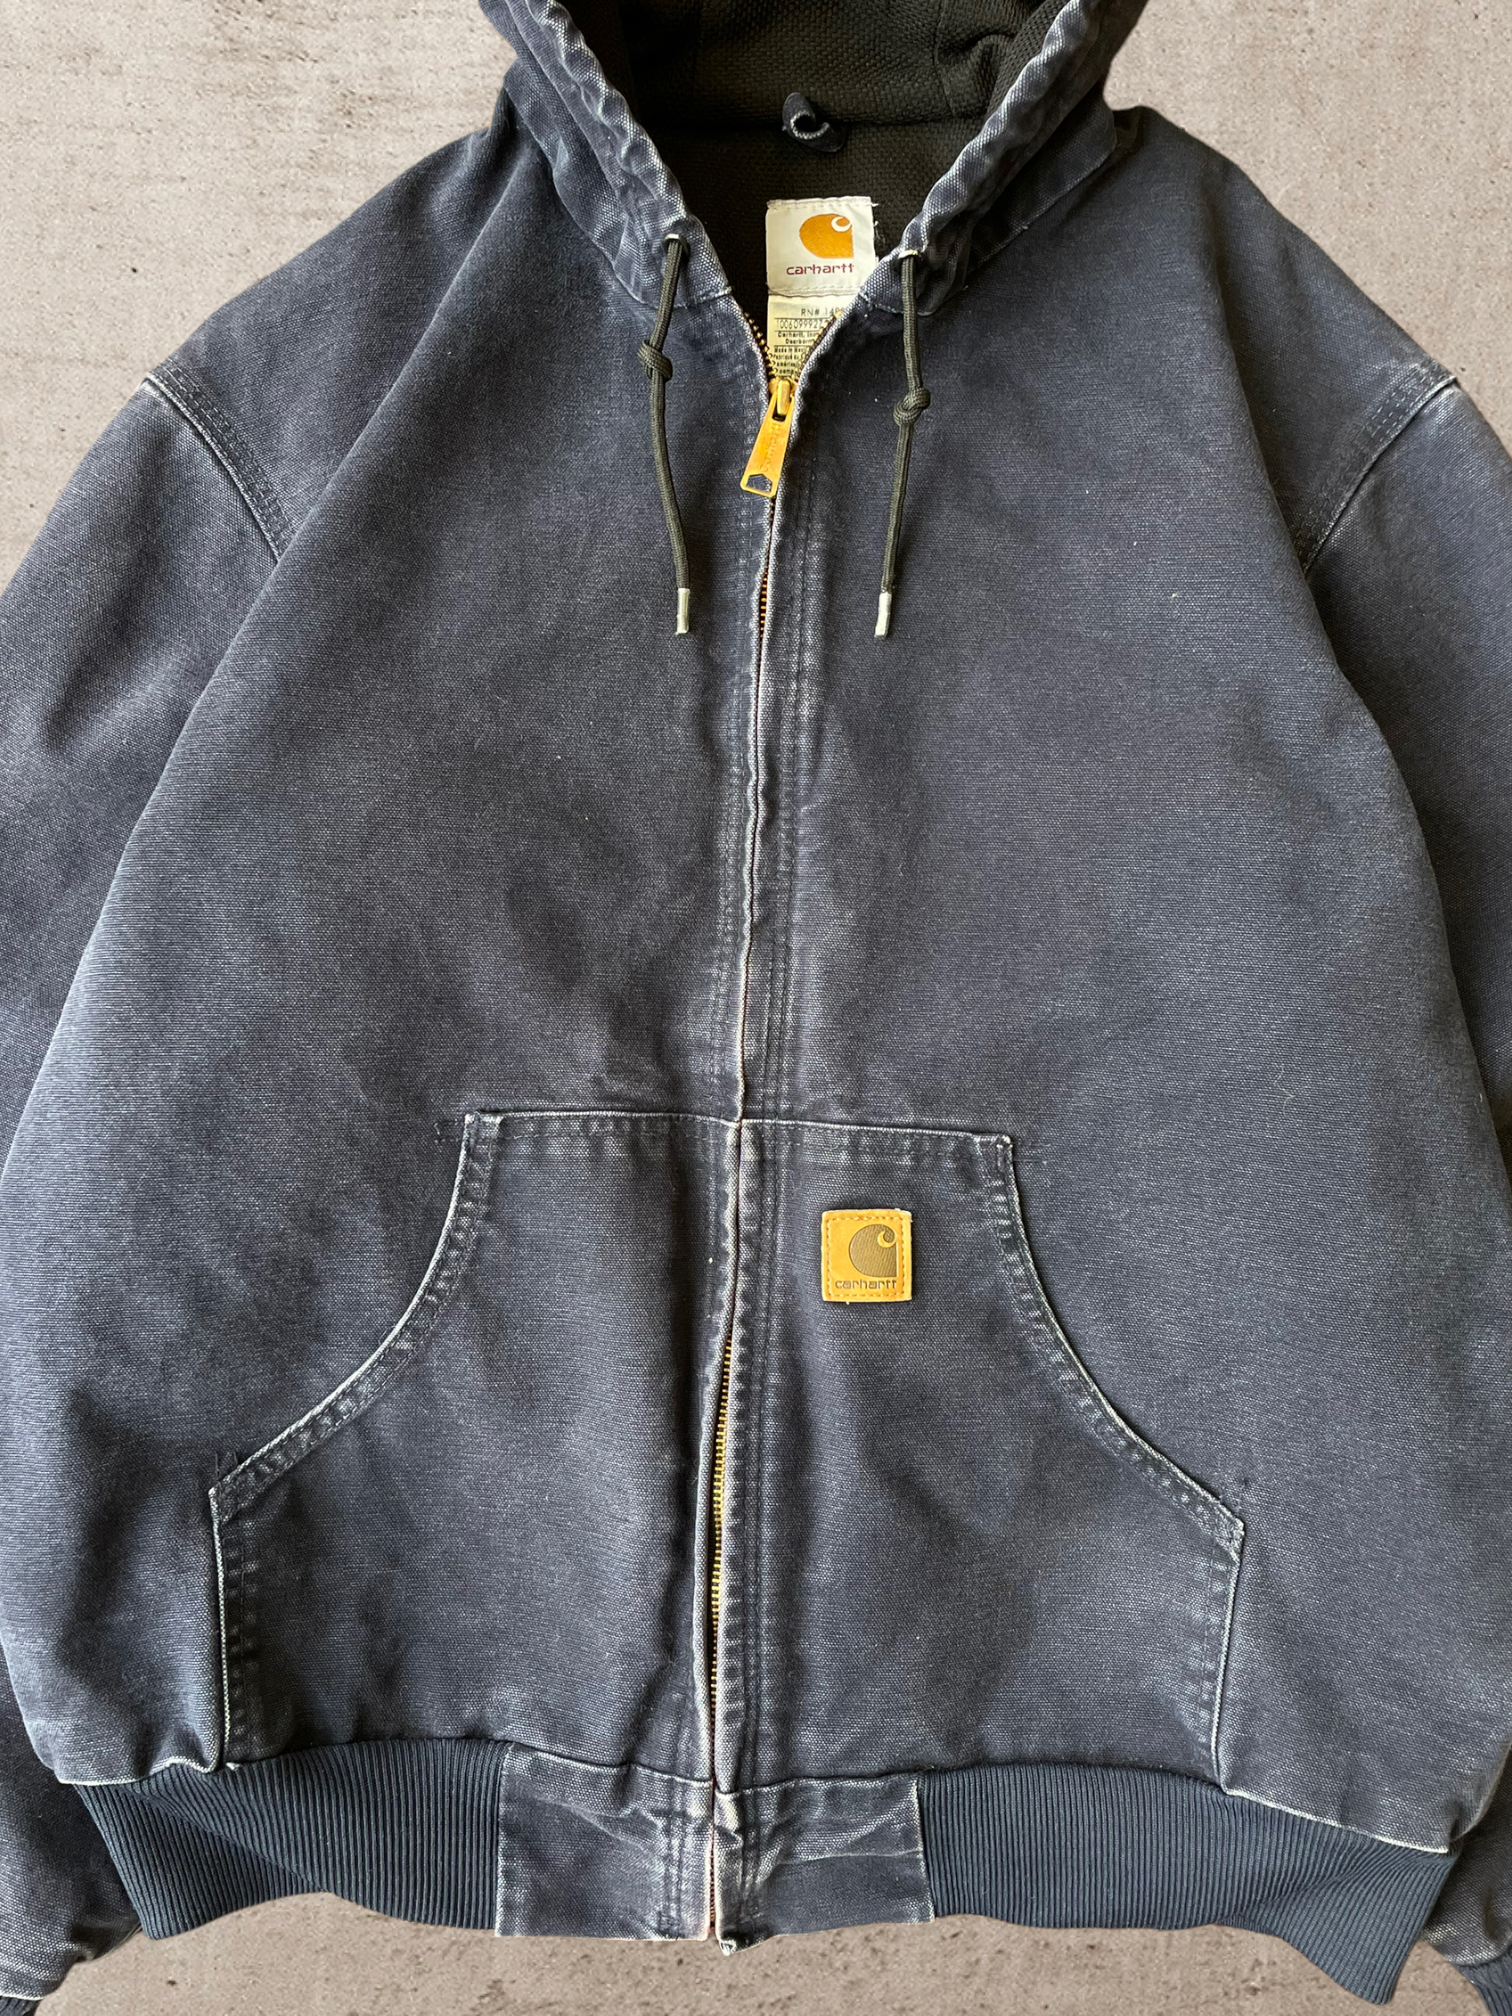 Vintage Carhartt Hooded Jacket - Medium